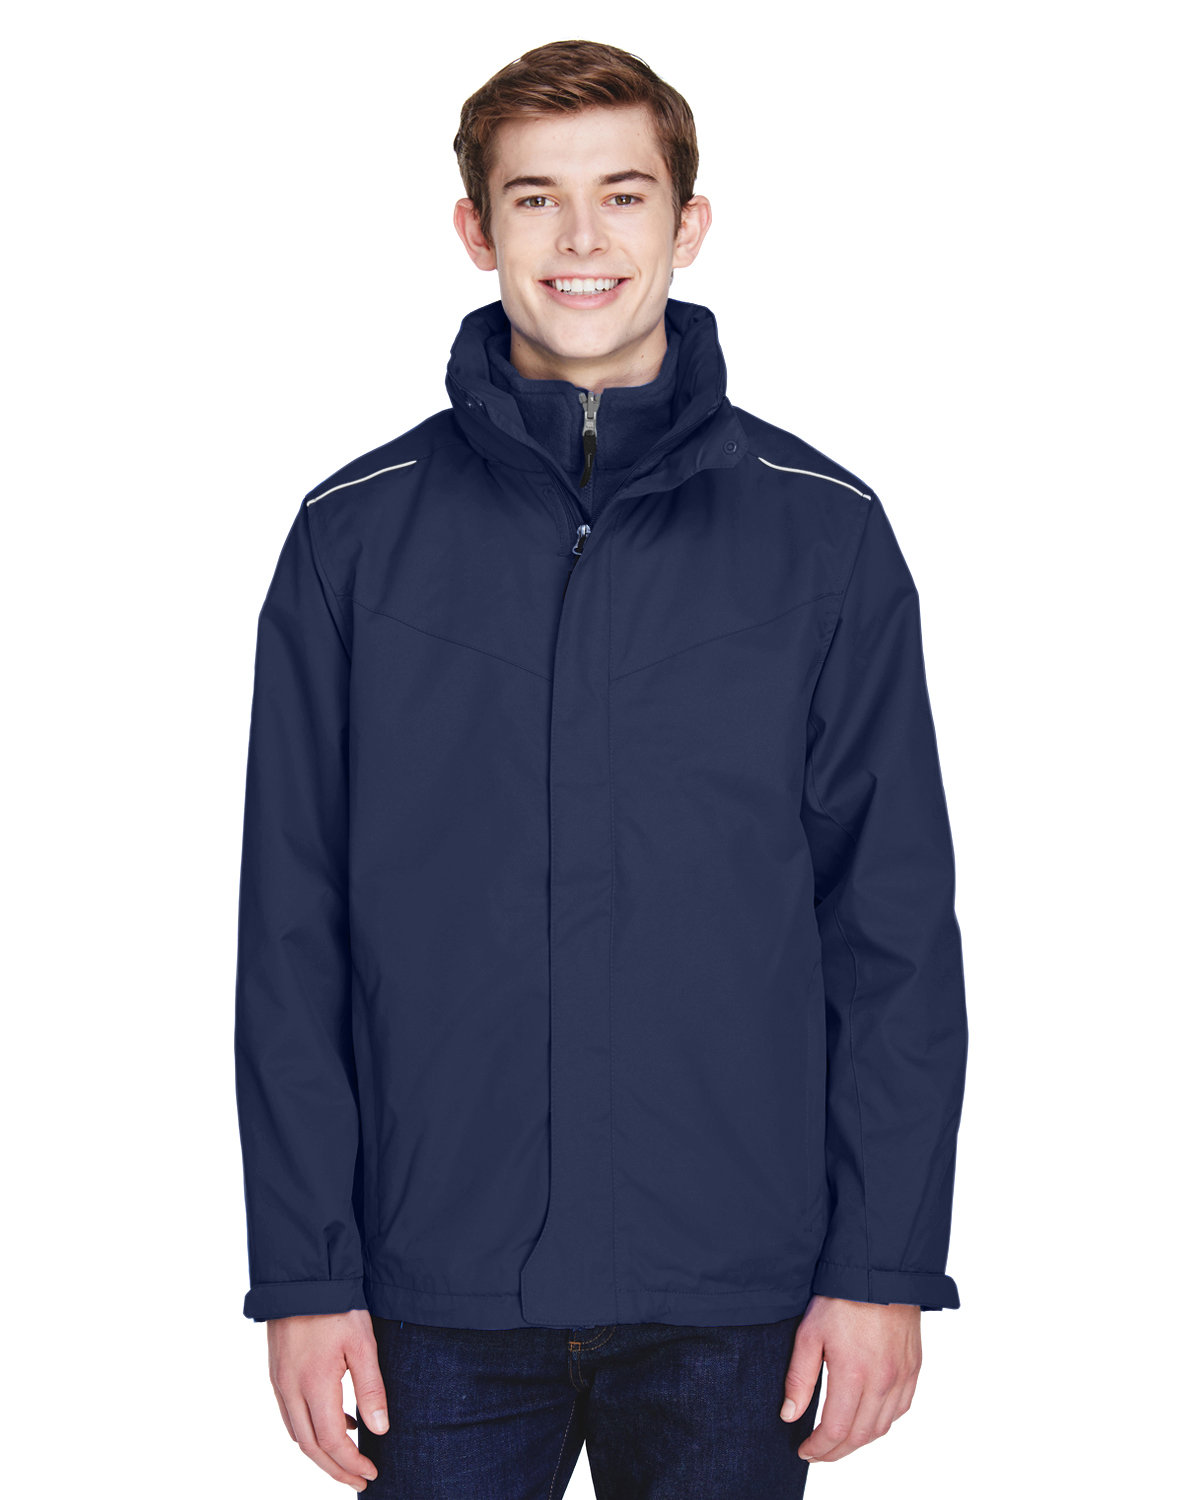 Core 365 Men's Tall Region 3-in-1 Jacket with Fleece Liner CLASSIC NAVY 